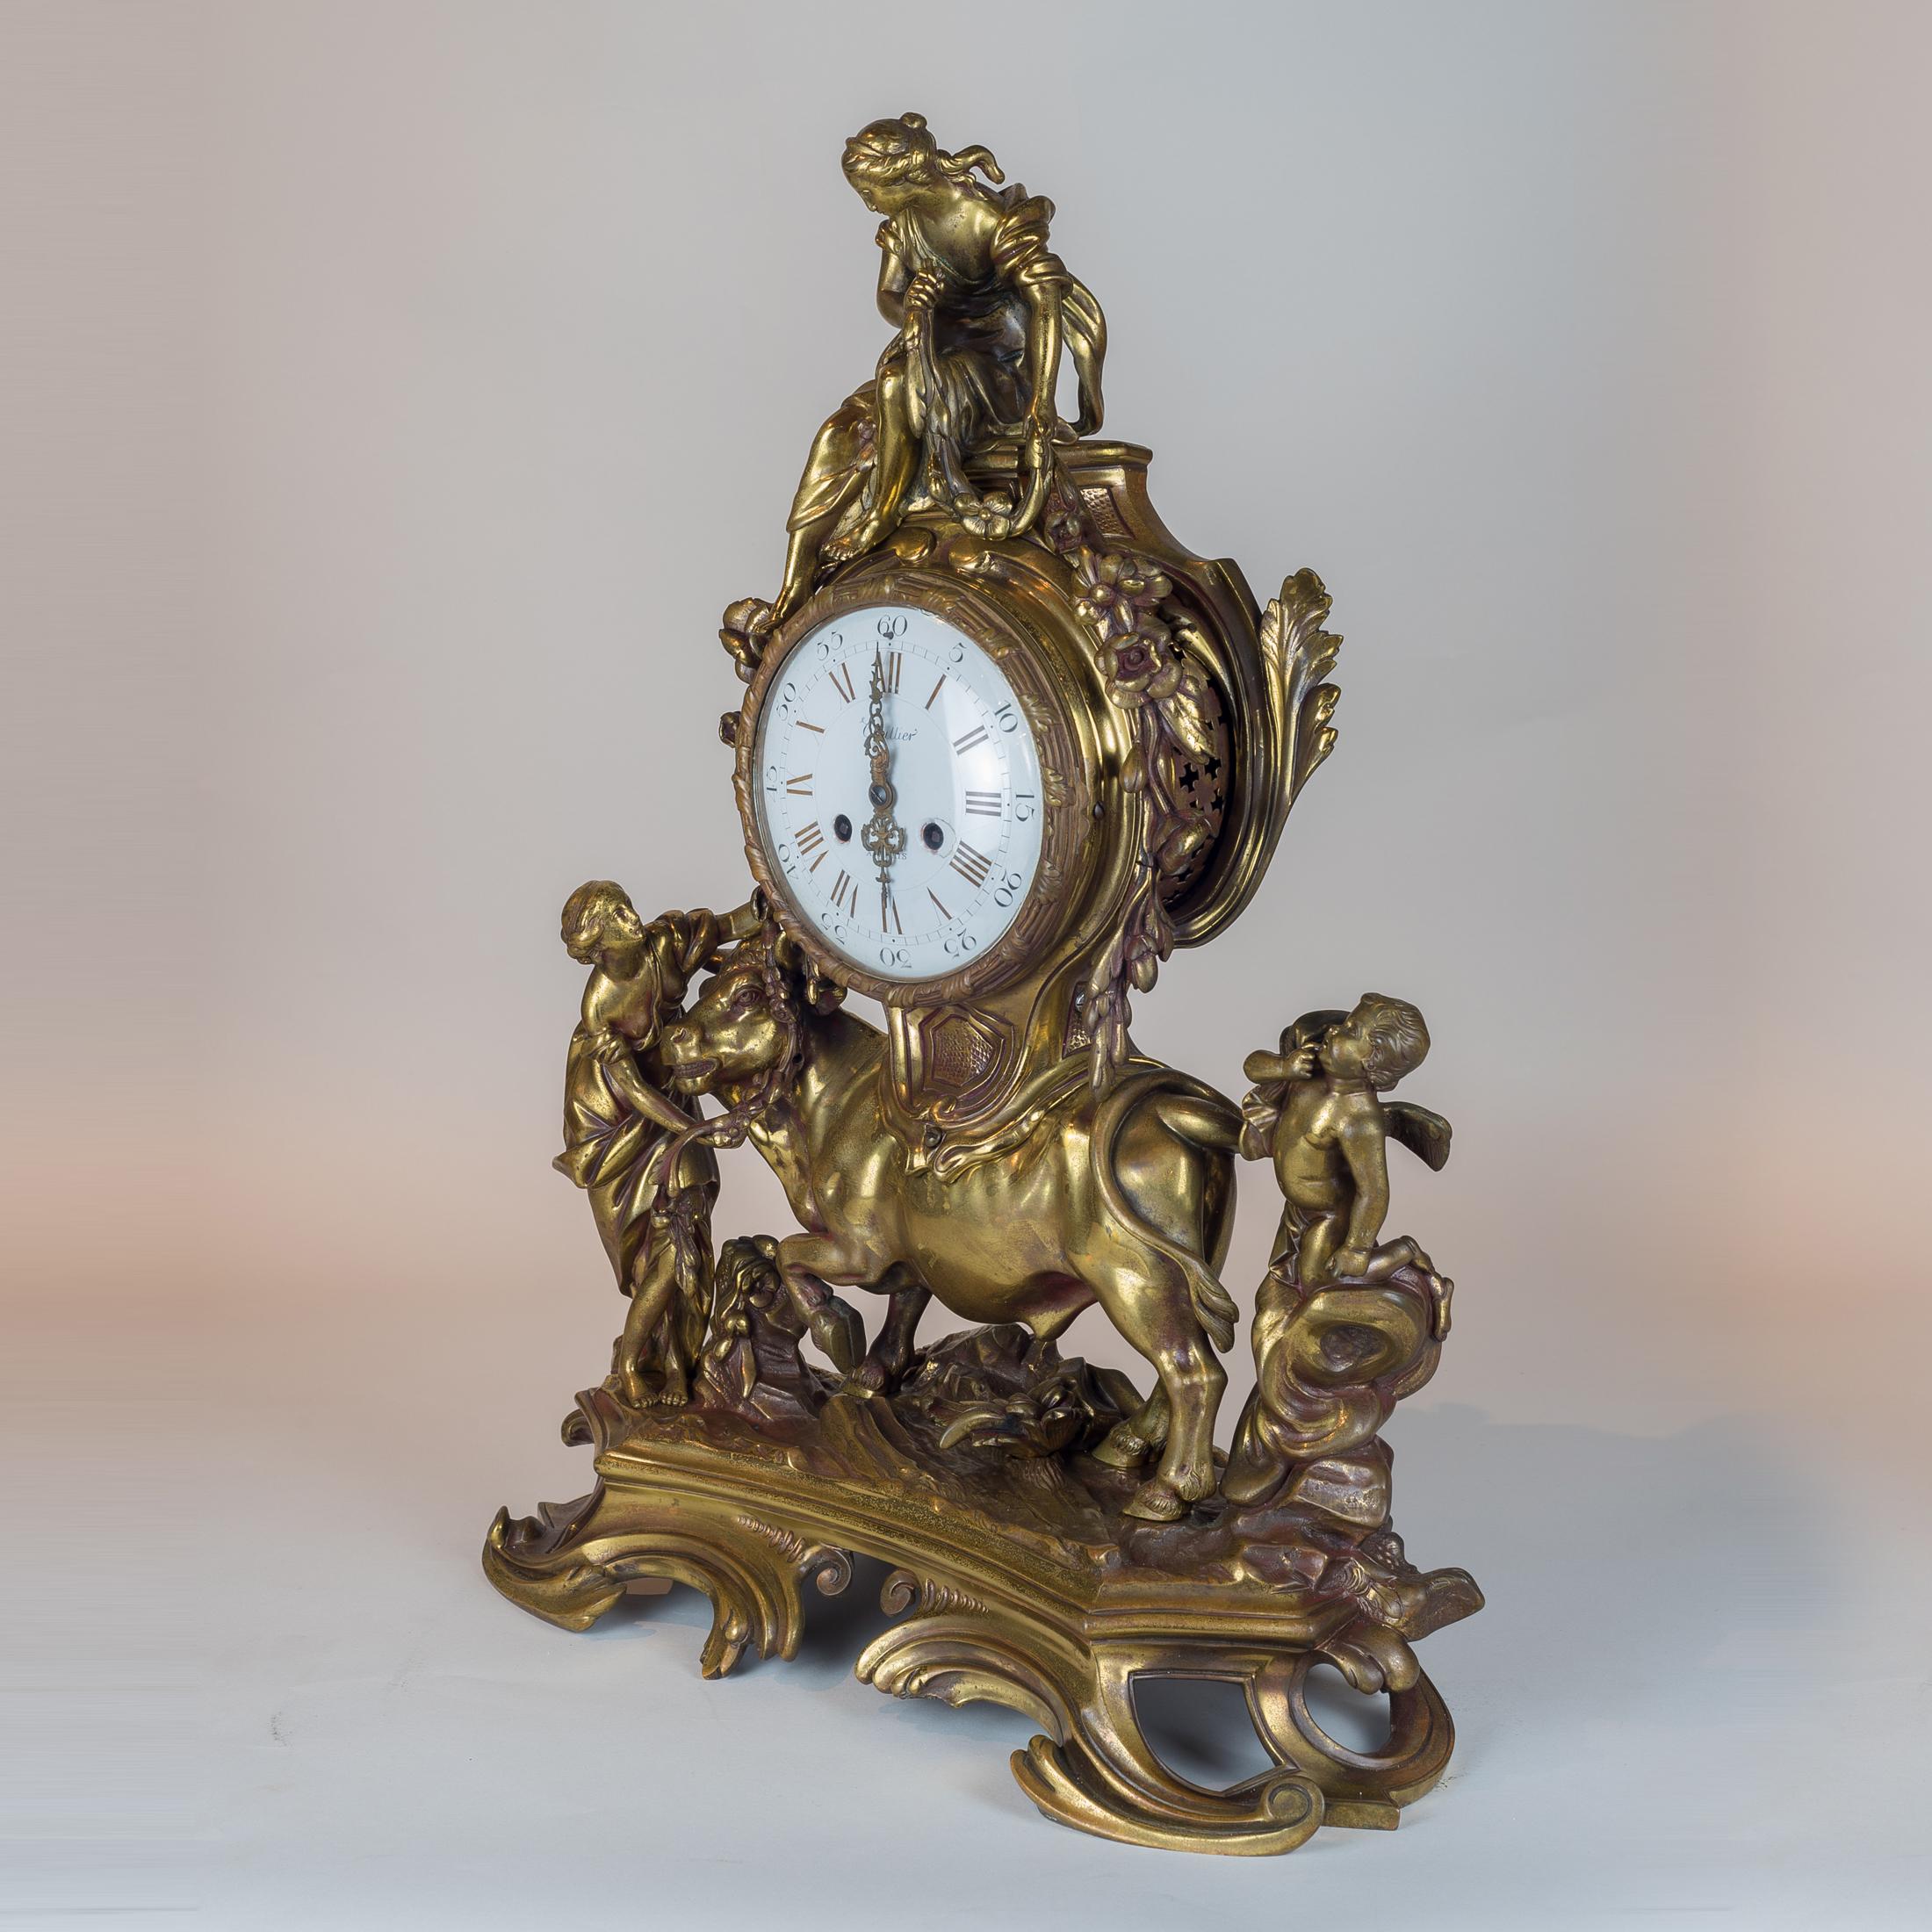 Une belle horloge de cheminée française en bronze doré. Surmonté d'une base en forme de plinthe avec des détails d'acanthe en volutes.

Origine : Français
Date : 19ème siècle
Dimension : 22 in x 17 1/2 in.